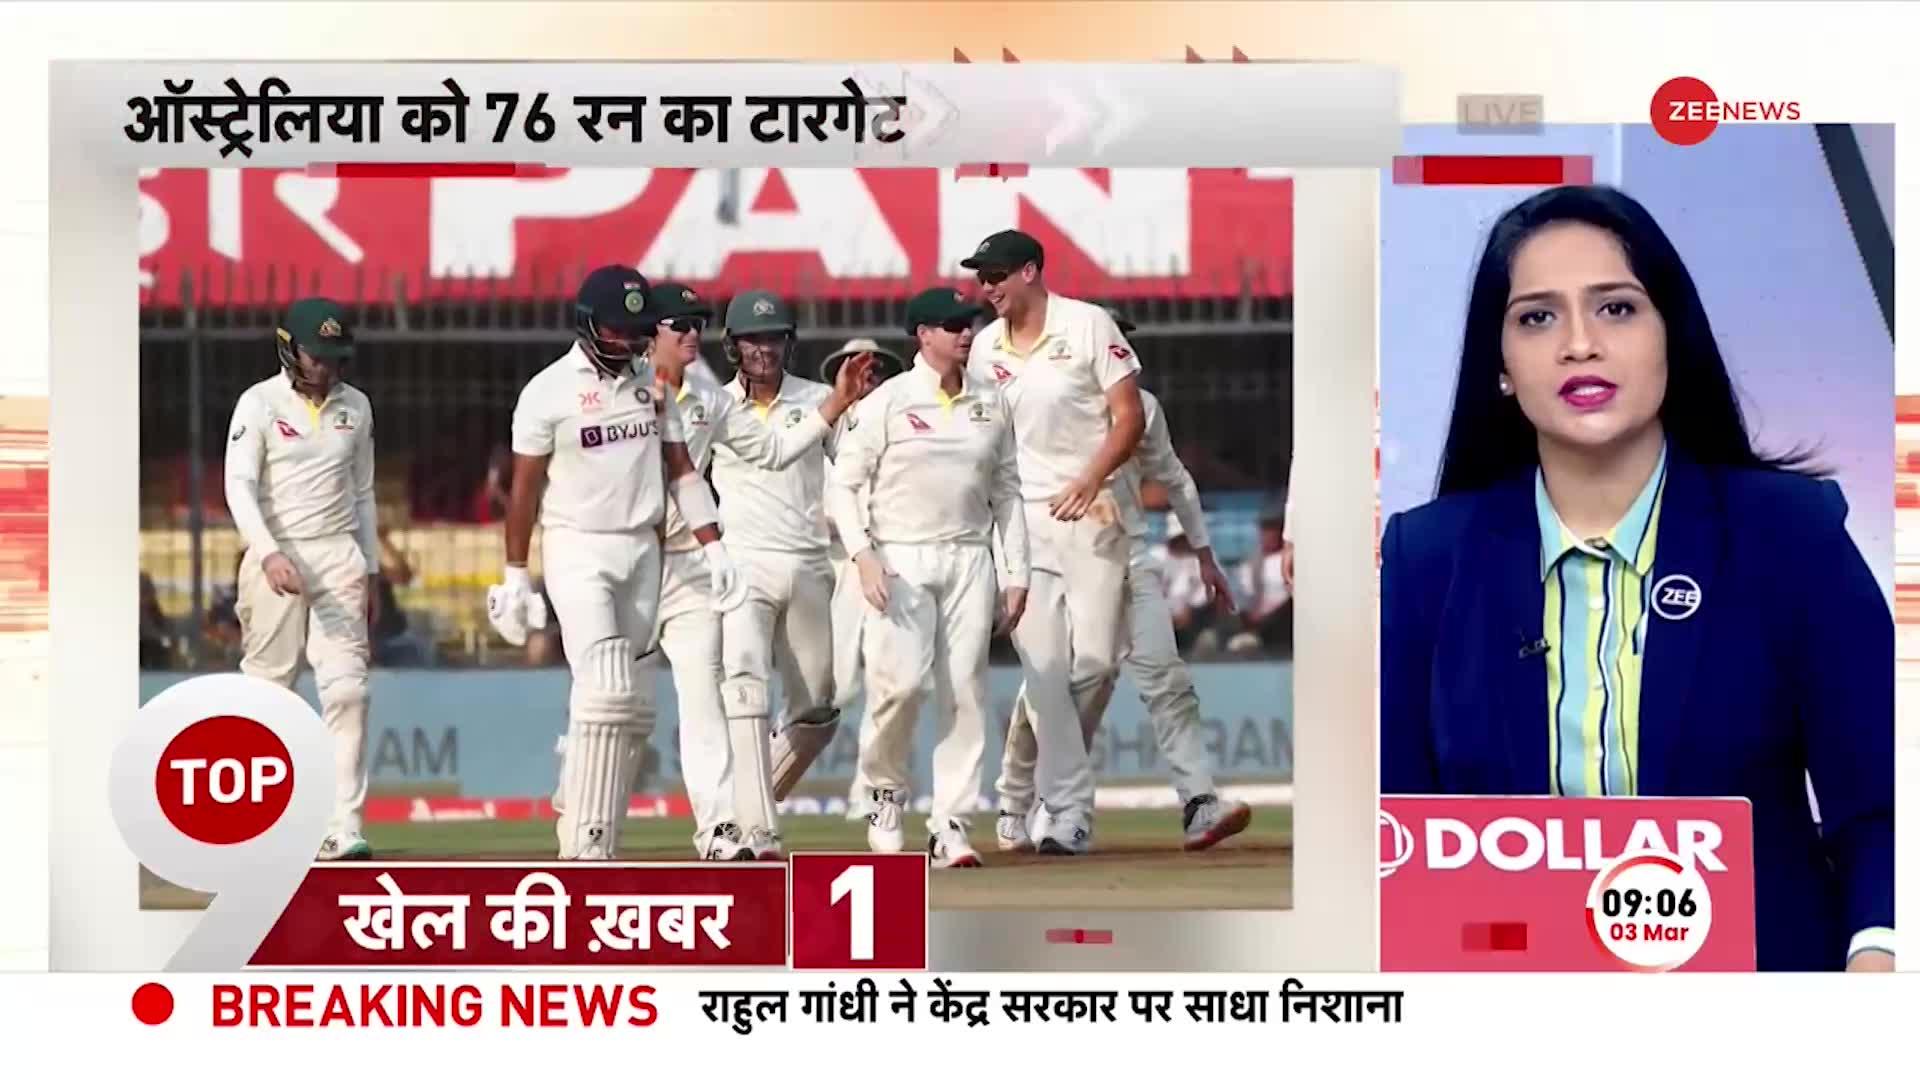 IND Vs AUS 3rd Test: तीसरे टेस्ट में Australia को मिला 76 Runs का Target, भारत का बेहद खराब प्रदर्शन